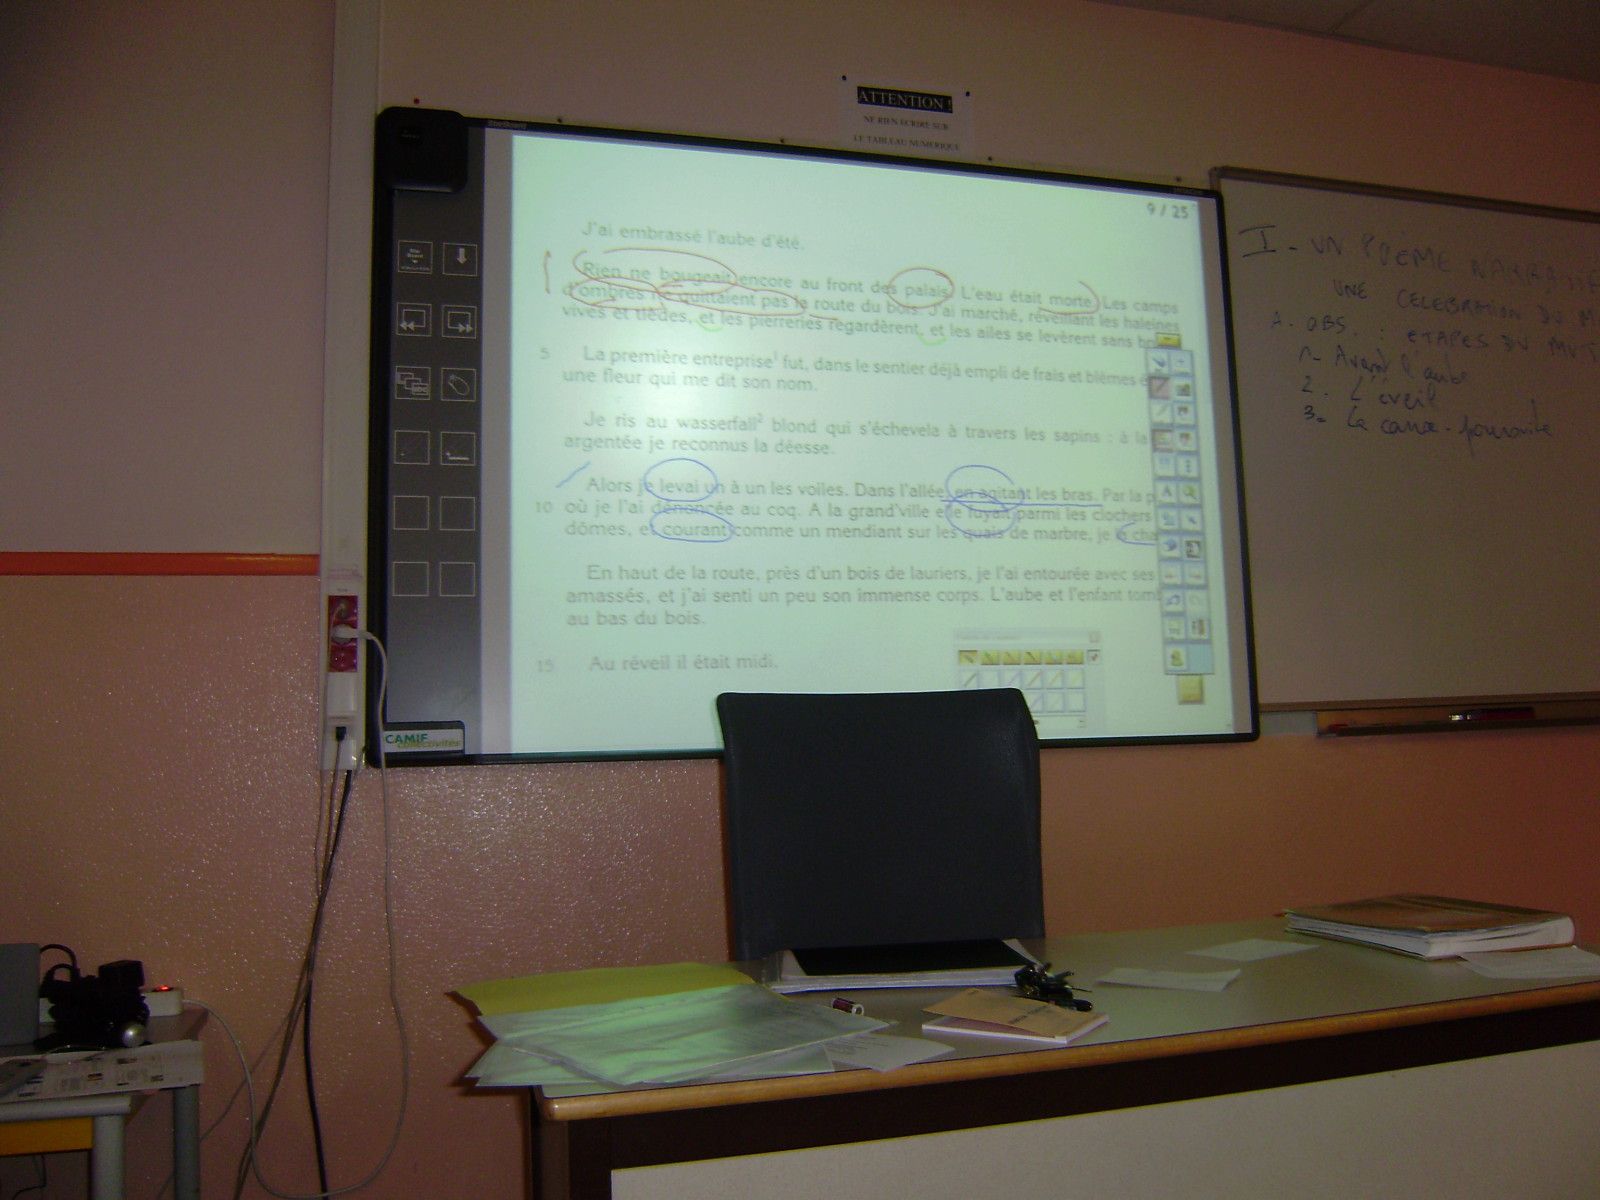 Du 1er au 6 mars 2010, 12 lycéens du Liceo Cecioni à Livourne ont séjourné au Lycée de l'Iroise à Brest, consolidé les liens avec les partenaires brestoois d'i-voix, participé à des cours et des ateliers d'écriture, visité Brest et la Bret